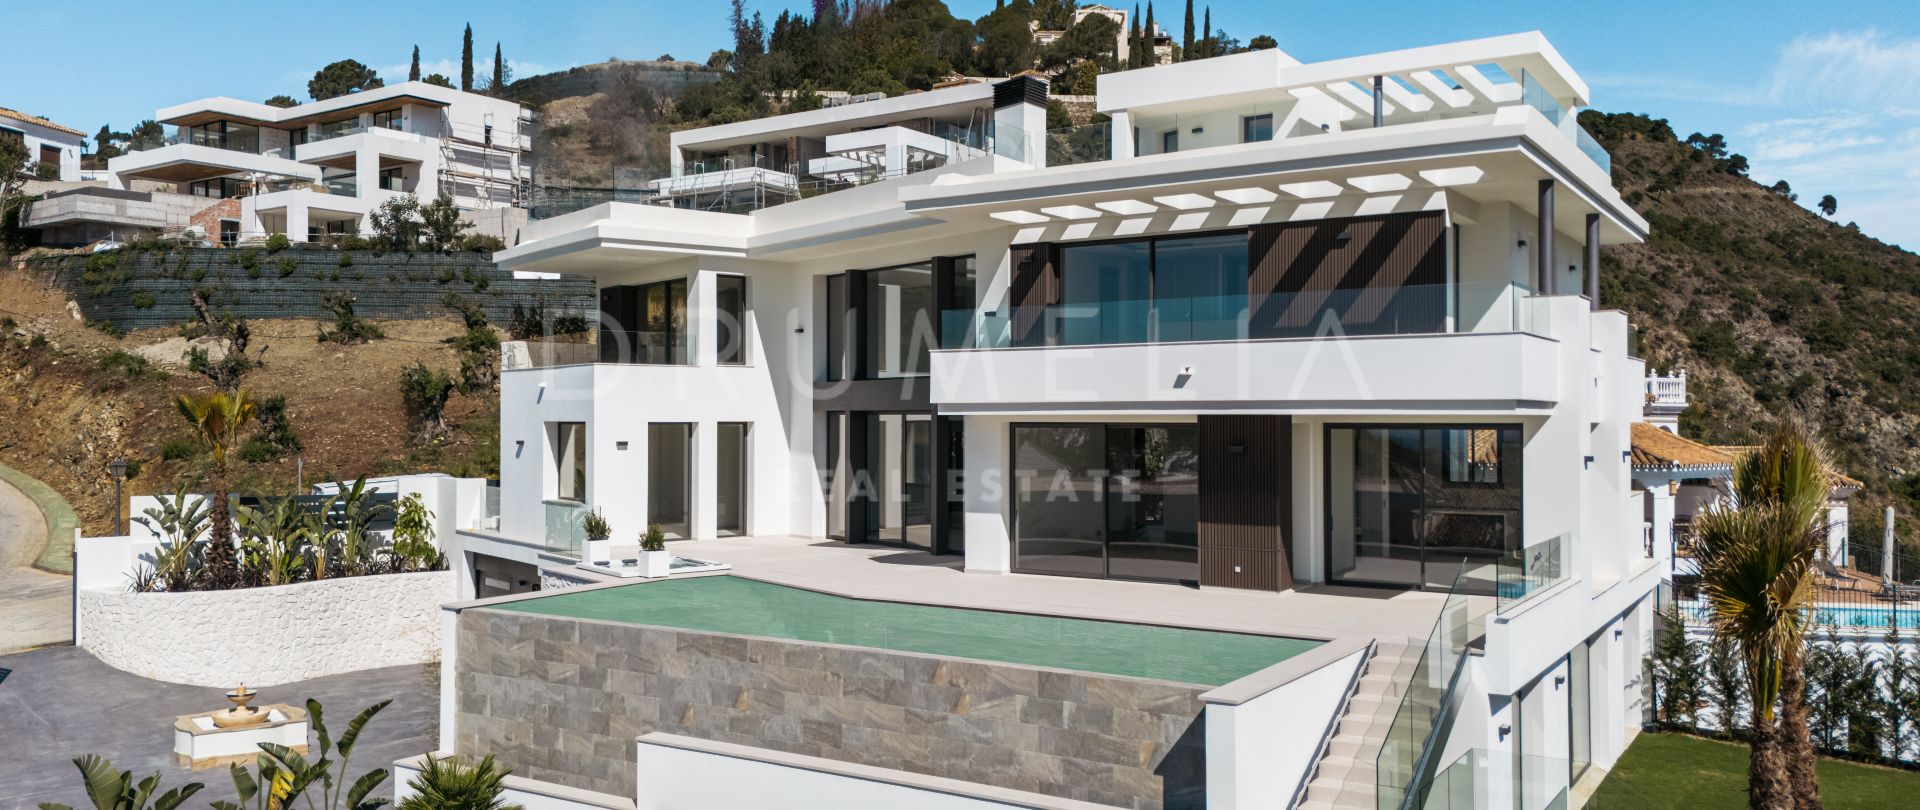 Lomas 10 - Modern helt ny villa i prestigefyllda Lomas de la Quinta, Marbella med fantastisk utsikt över havet och bergen